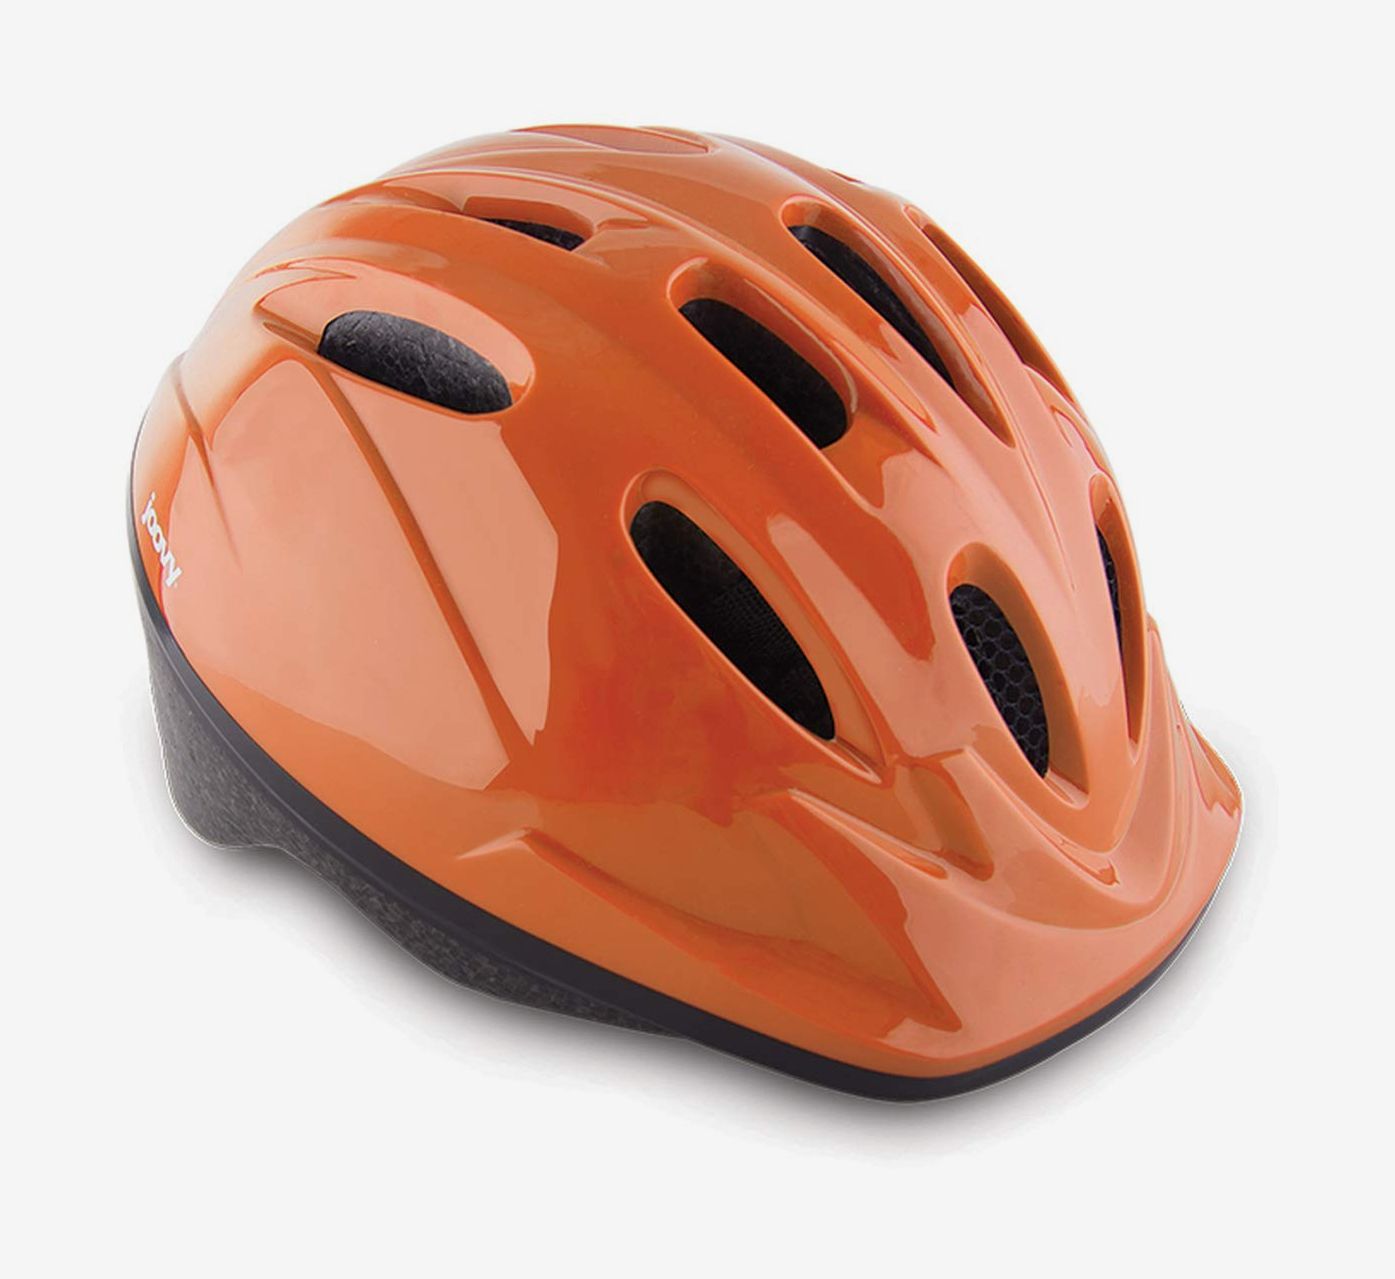 Kids Adjustable Helmet Toddler Bike Helmet Outdoor Sports Protective Gear S9X7 